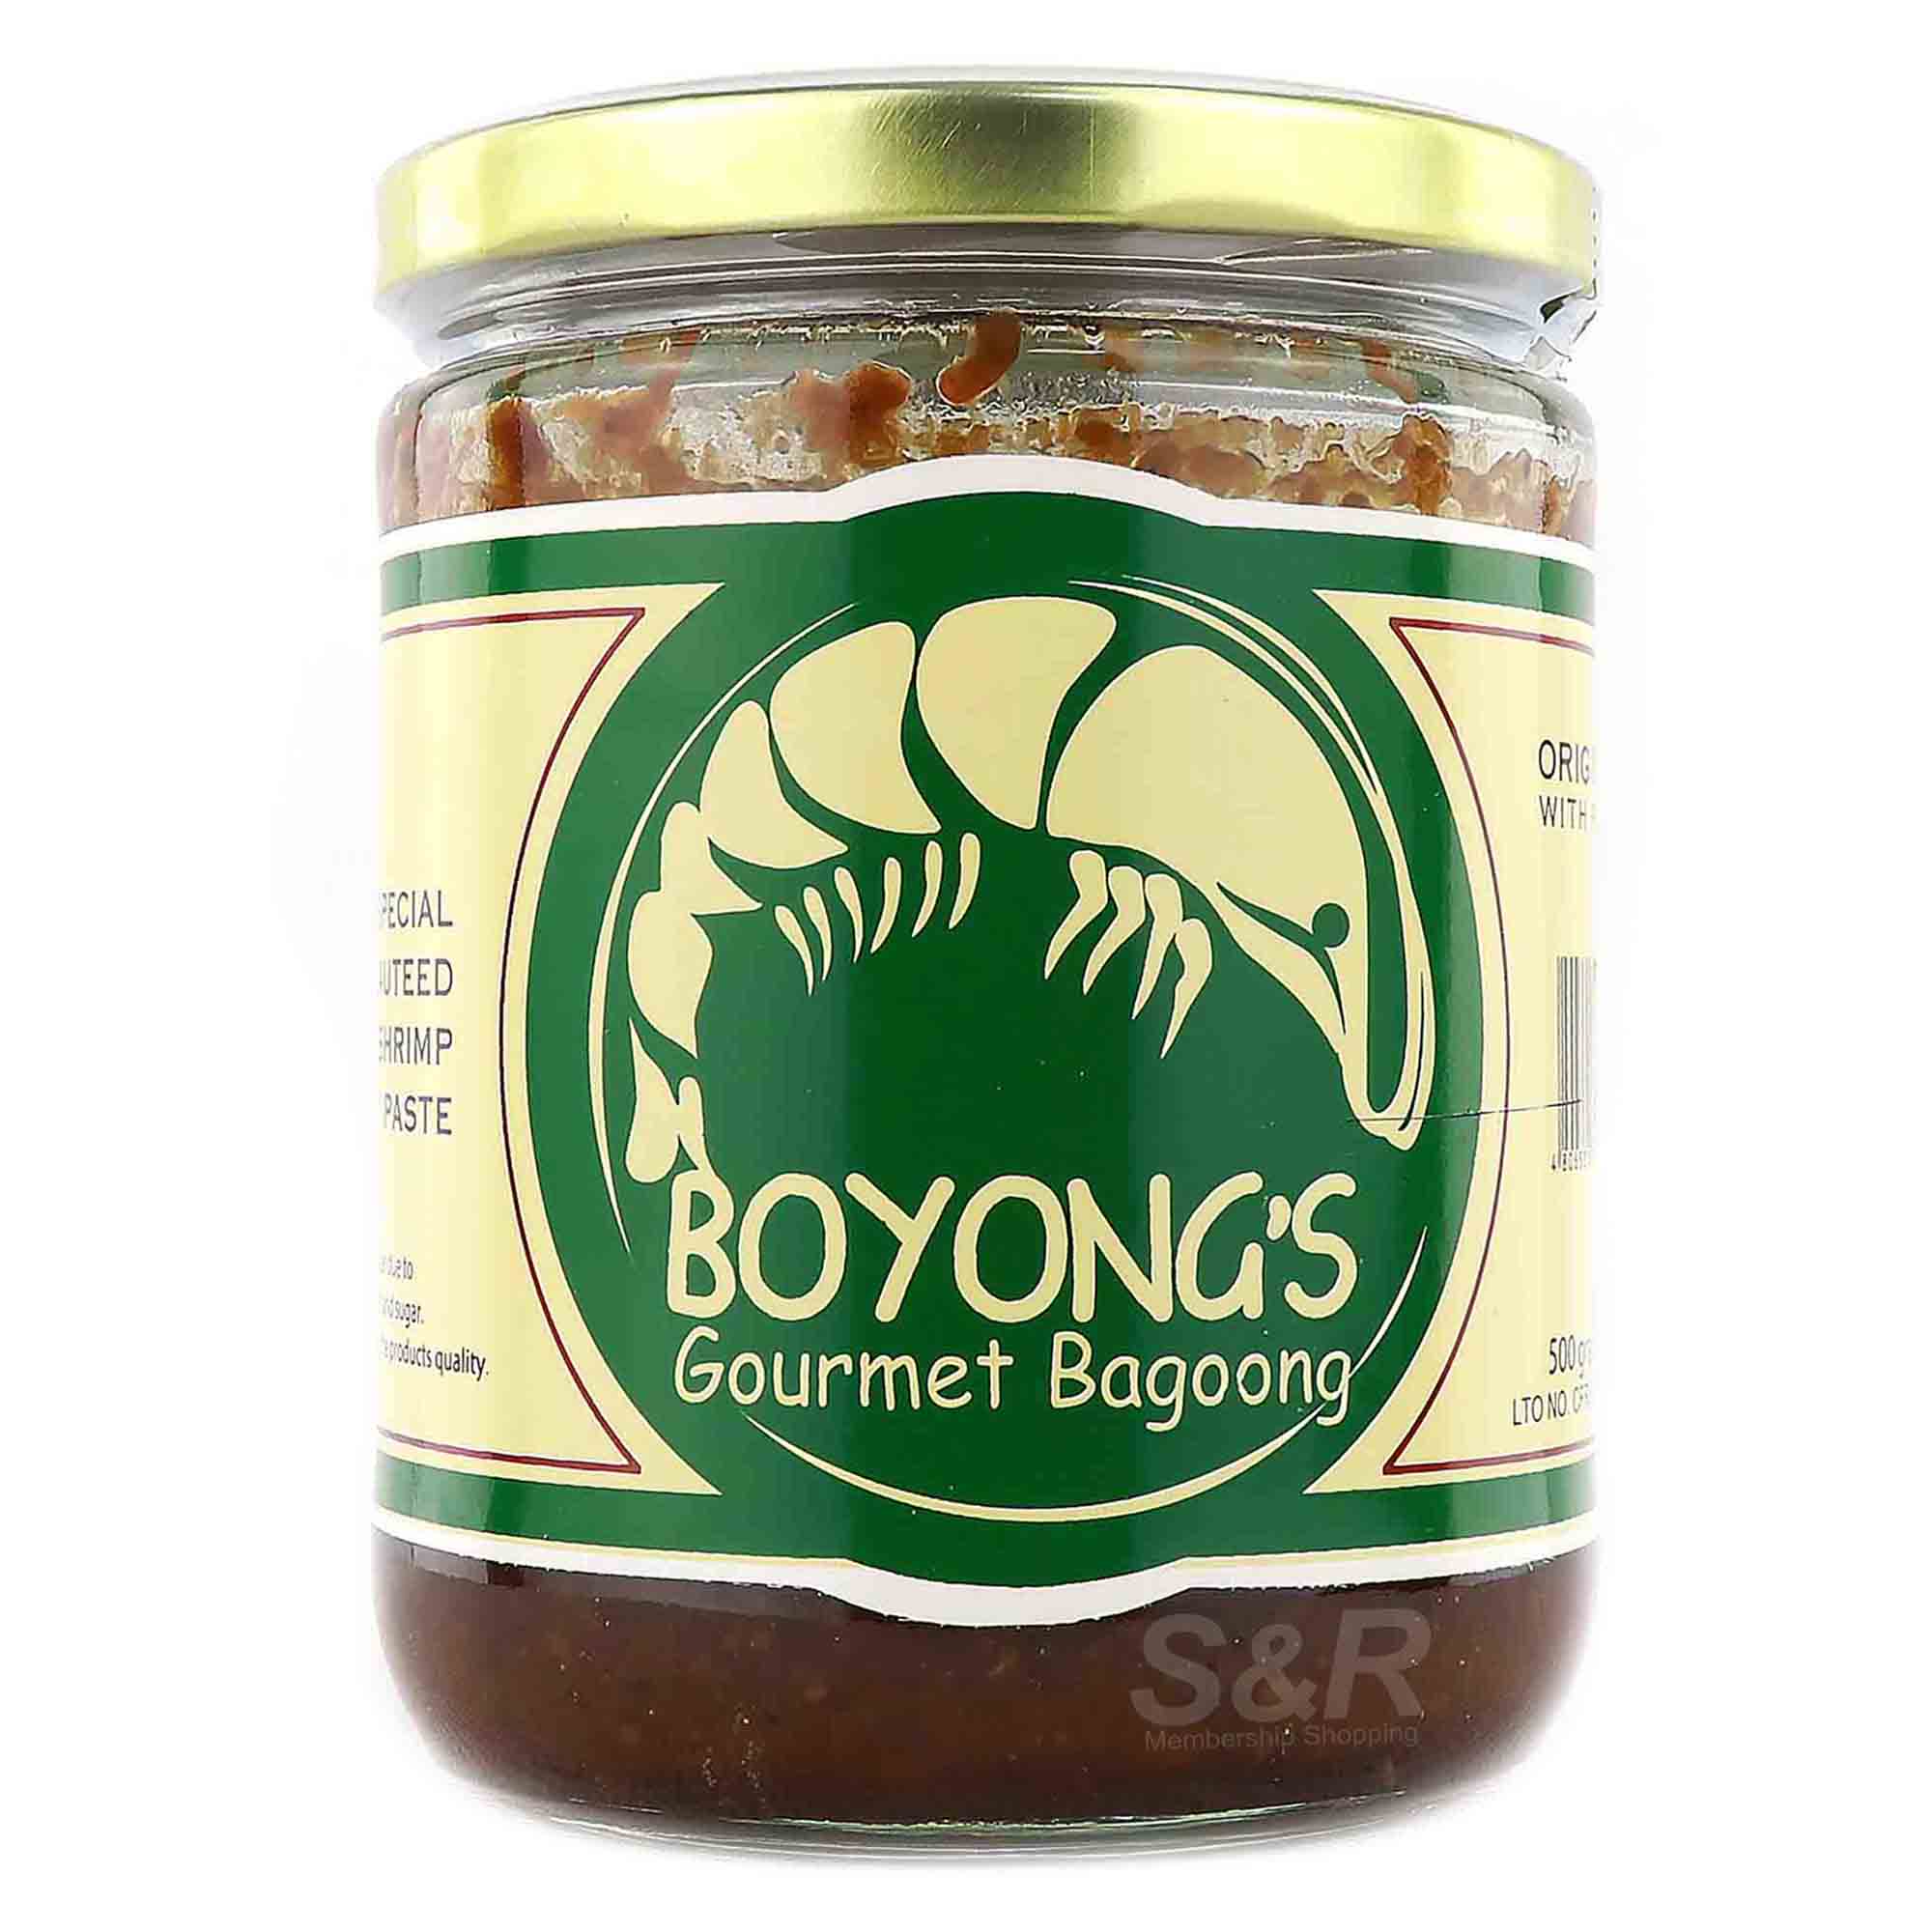 Boyong's Gourmet Bagoong Original Flavor 500g